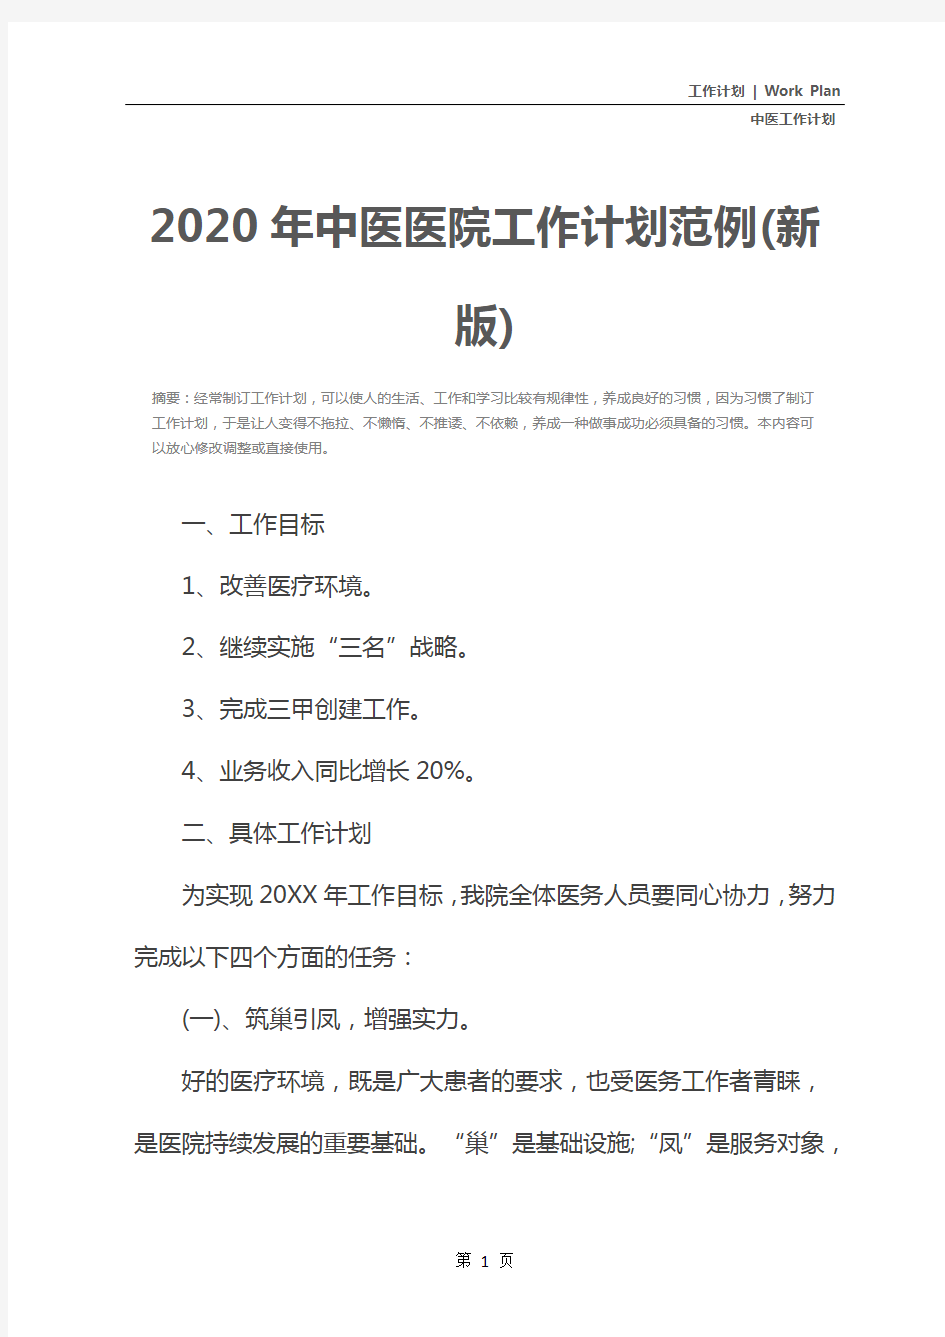 2020年中医医院工作计划范例(新版)